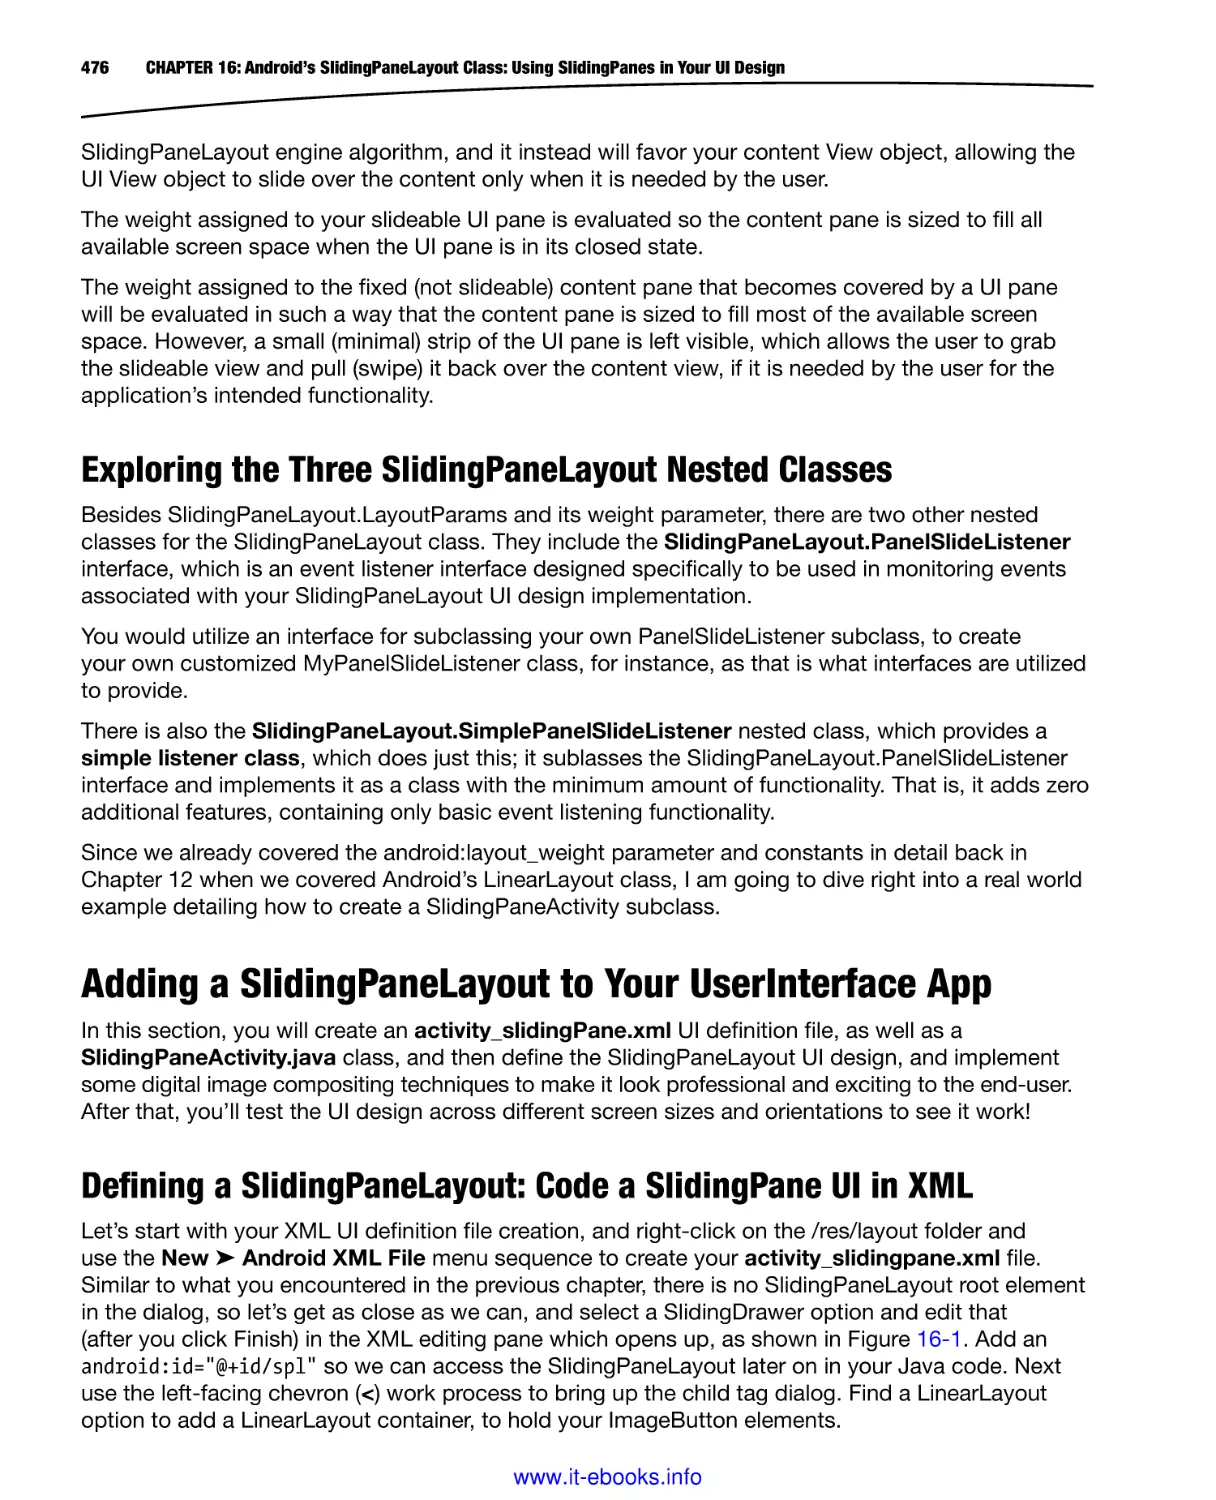 Exploring the Three SlidingPaneLayout Nested Classes
Adding a SlidingPaneLayout to Your UserInterface App
Defining a SlidingPaneLayout